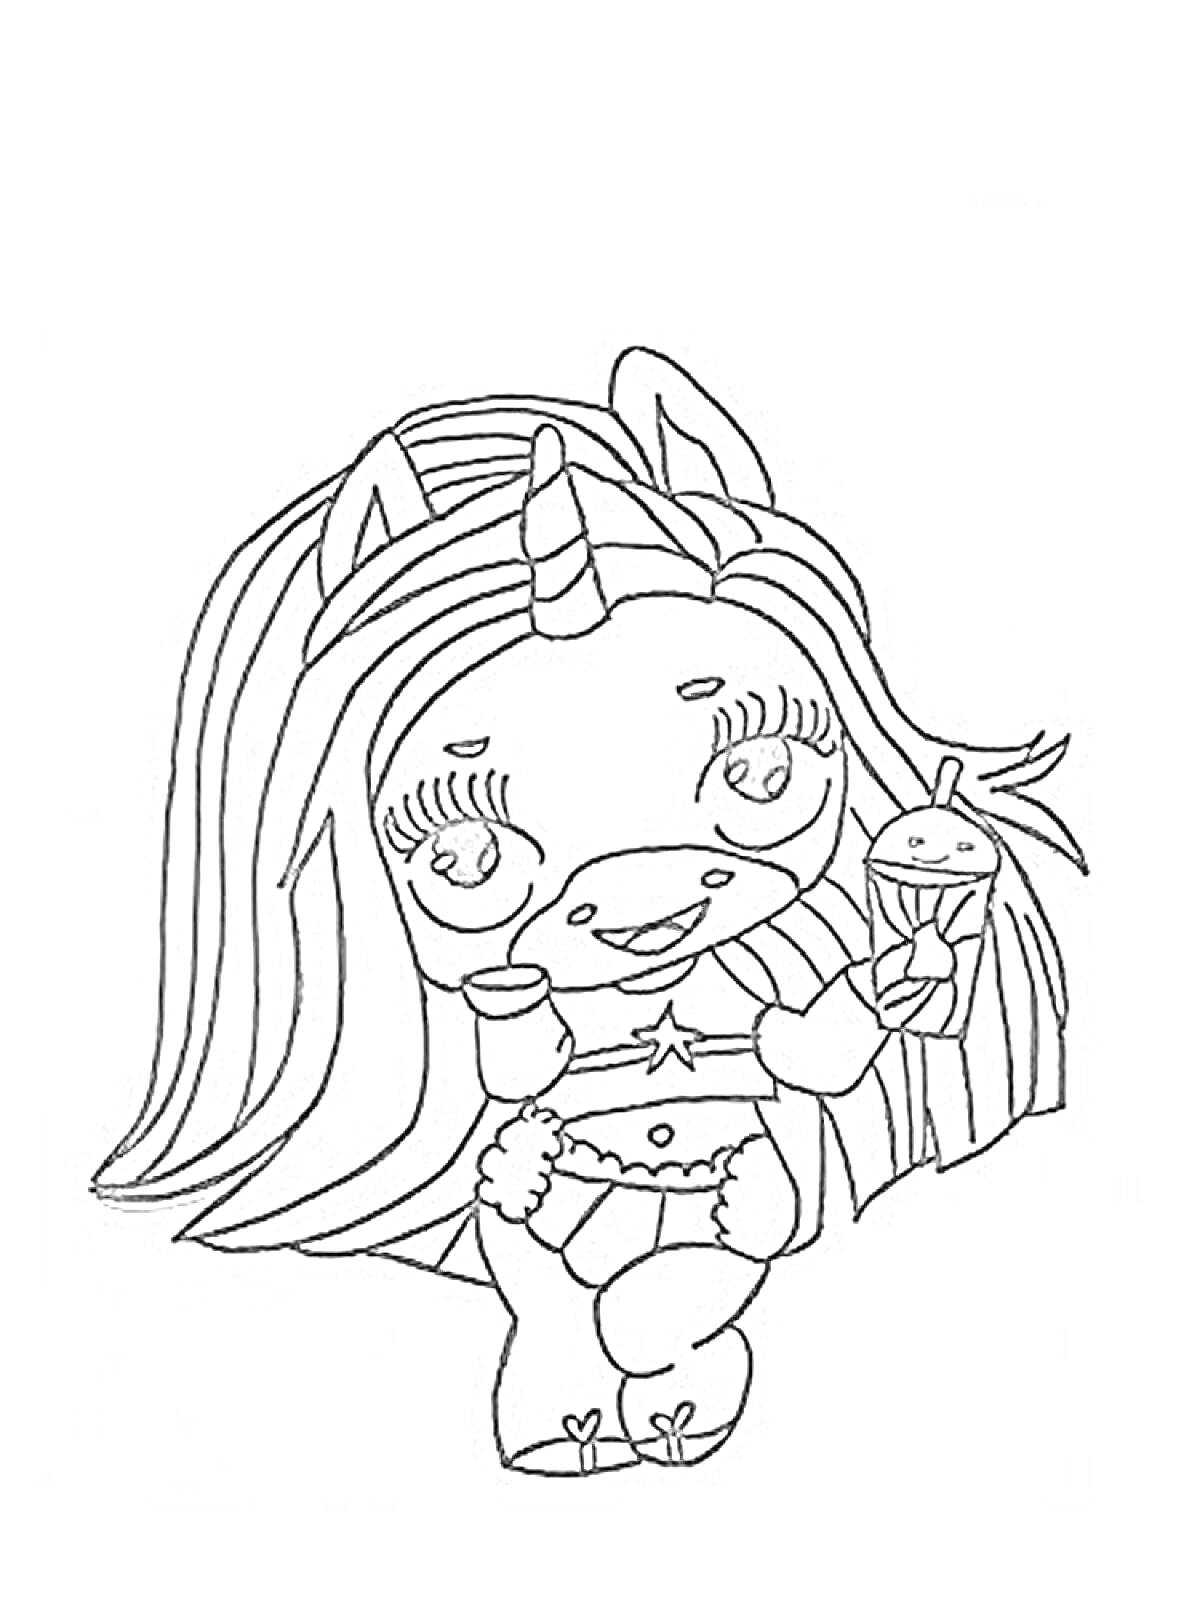 Раскраска Пупси Единорог с длинными волосами, в наряде с звездочкой, держащий мороженое и звездочку